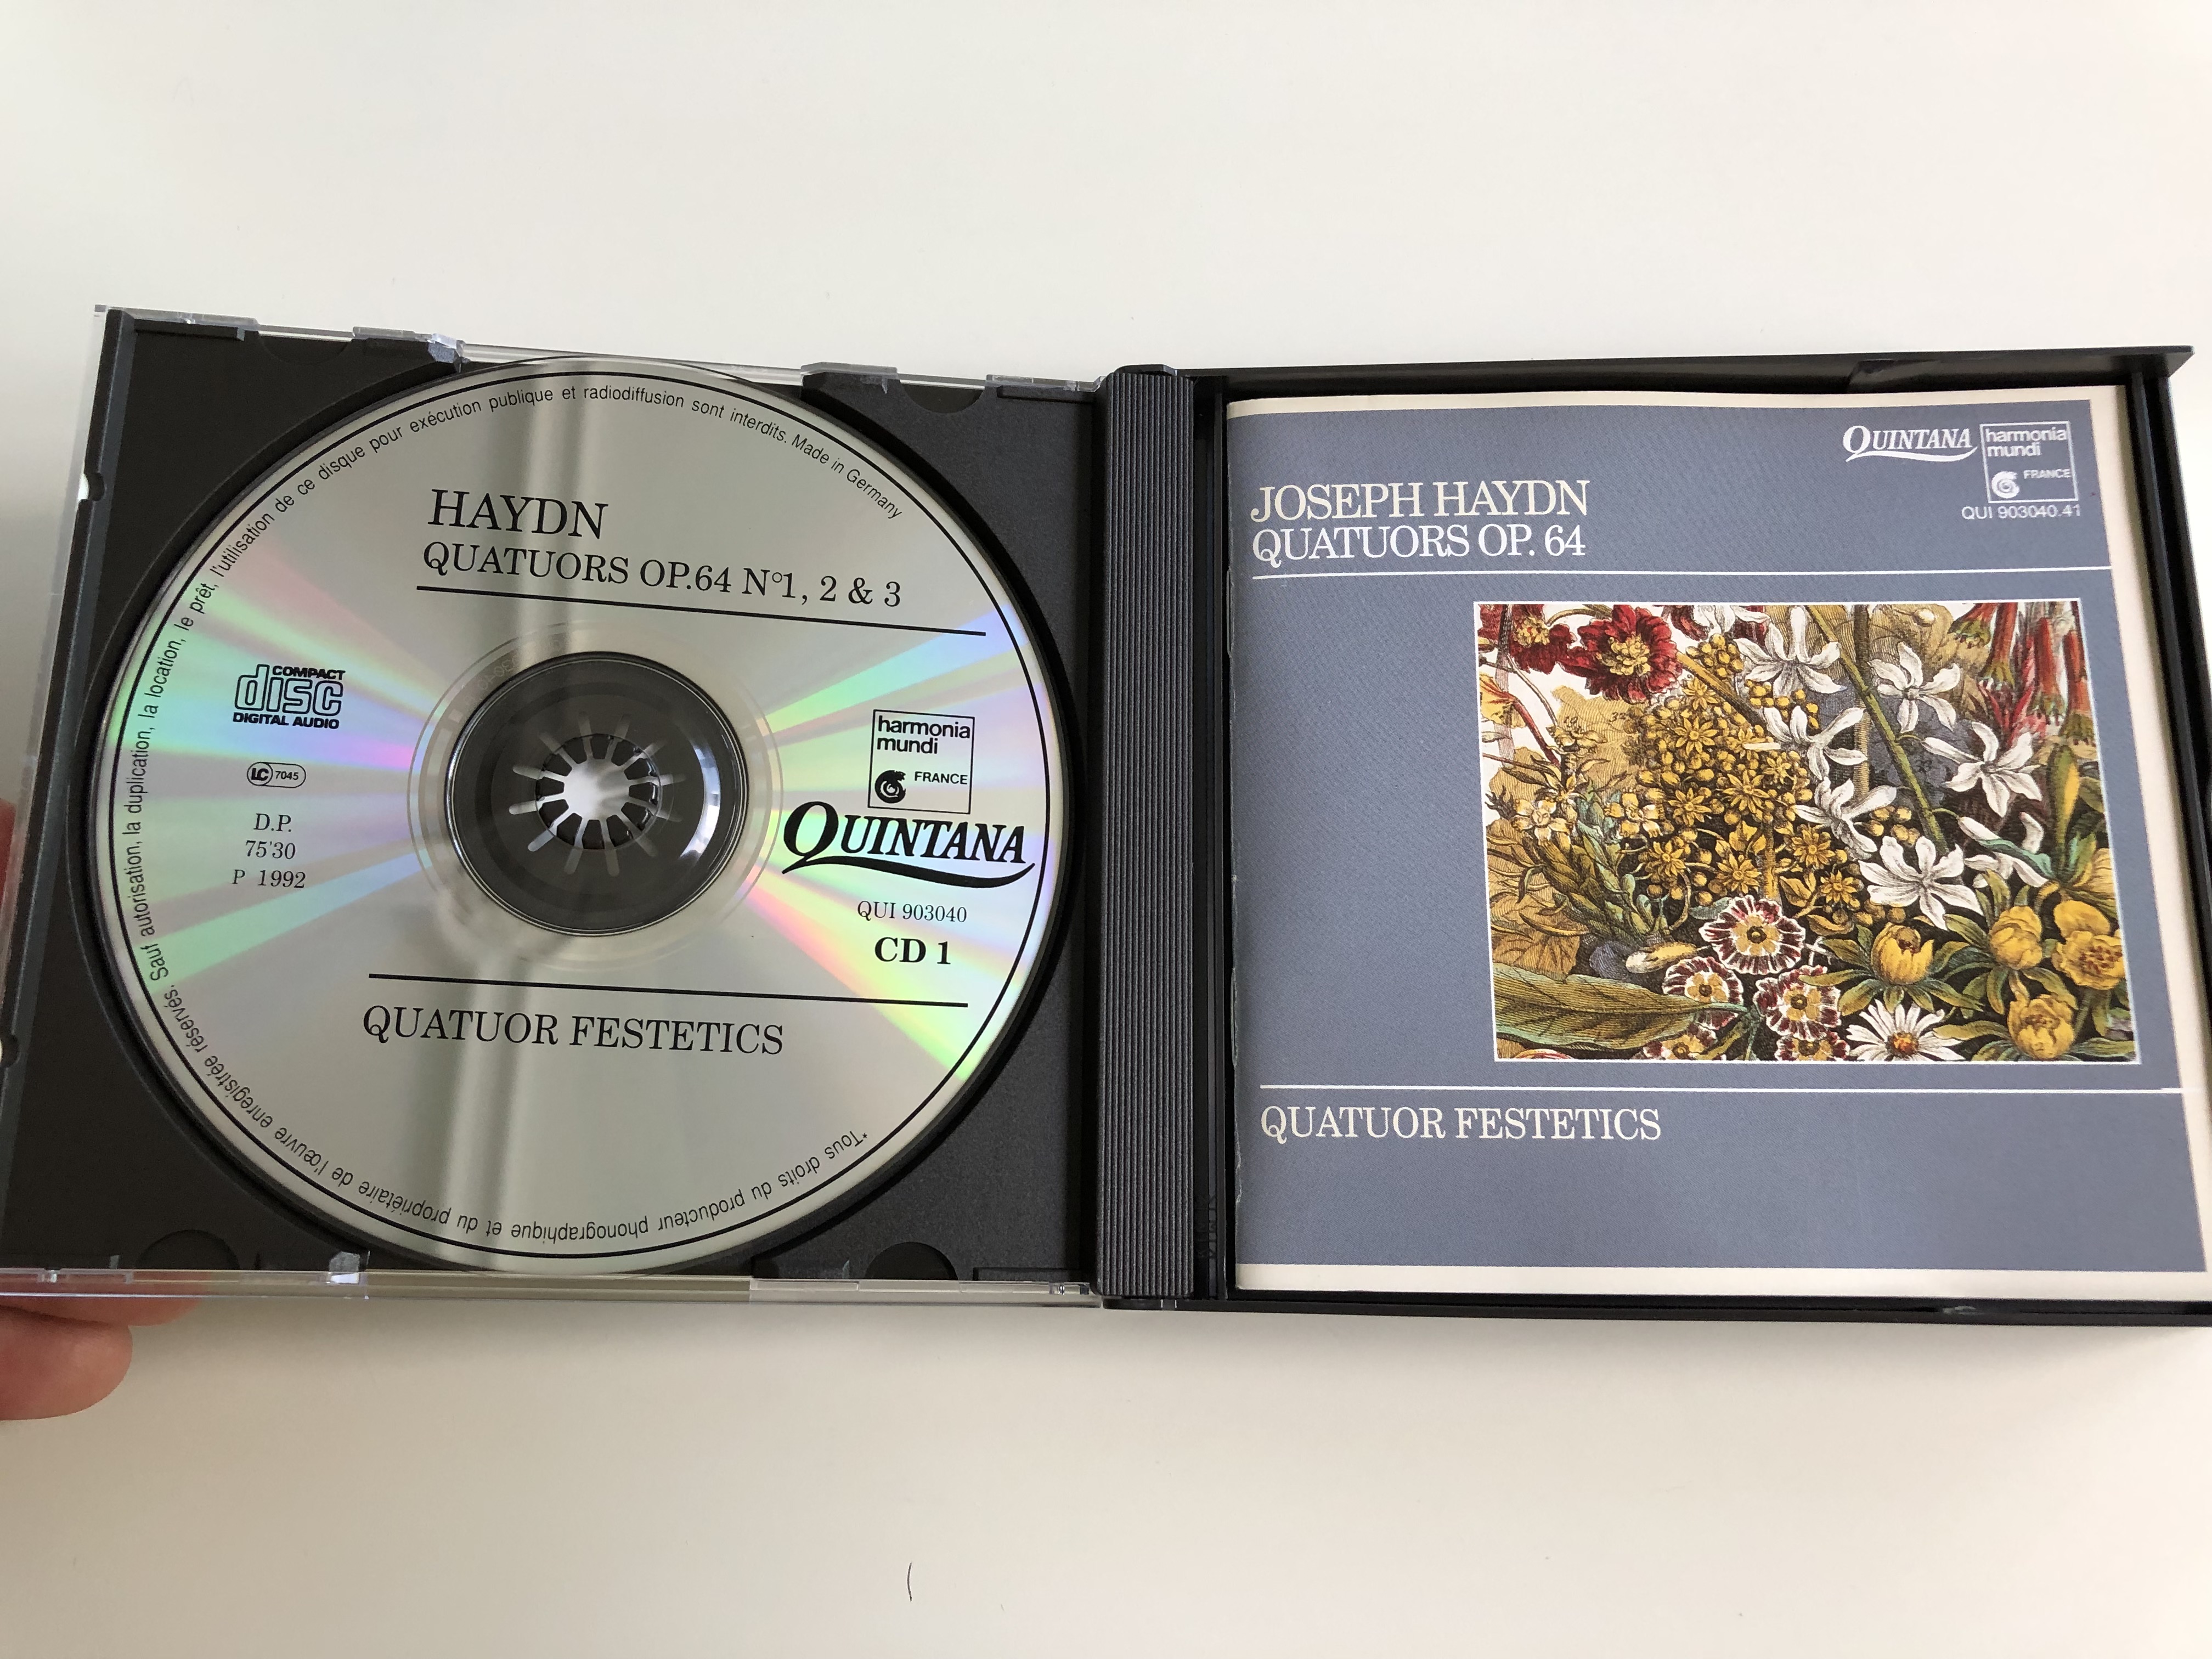 joseph-haydn-quatuors-op.64-quator-festetics-on-period-instrument-audio-cd-1992-qui-903040.41-2-cd-3-.jpg